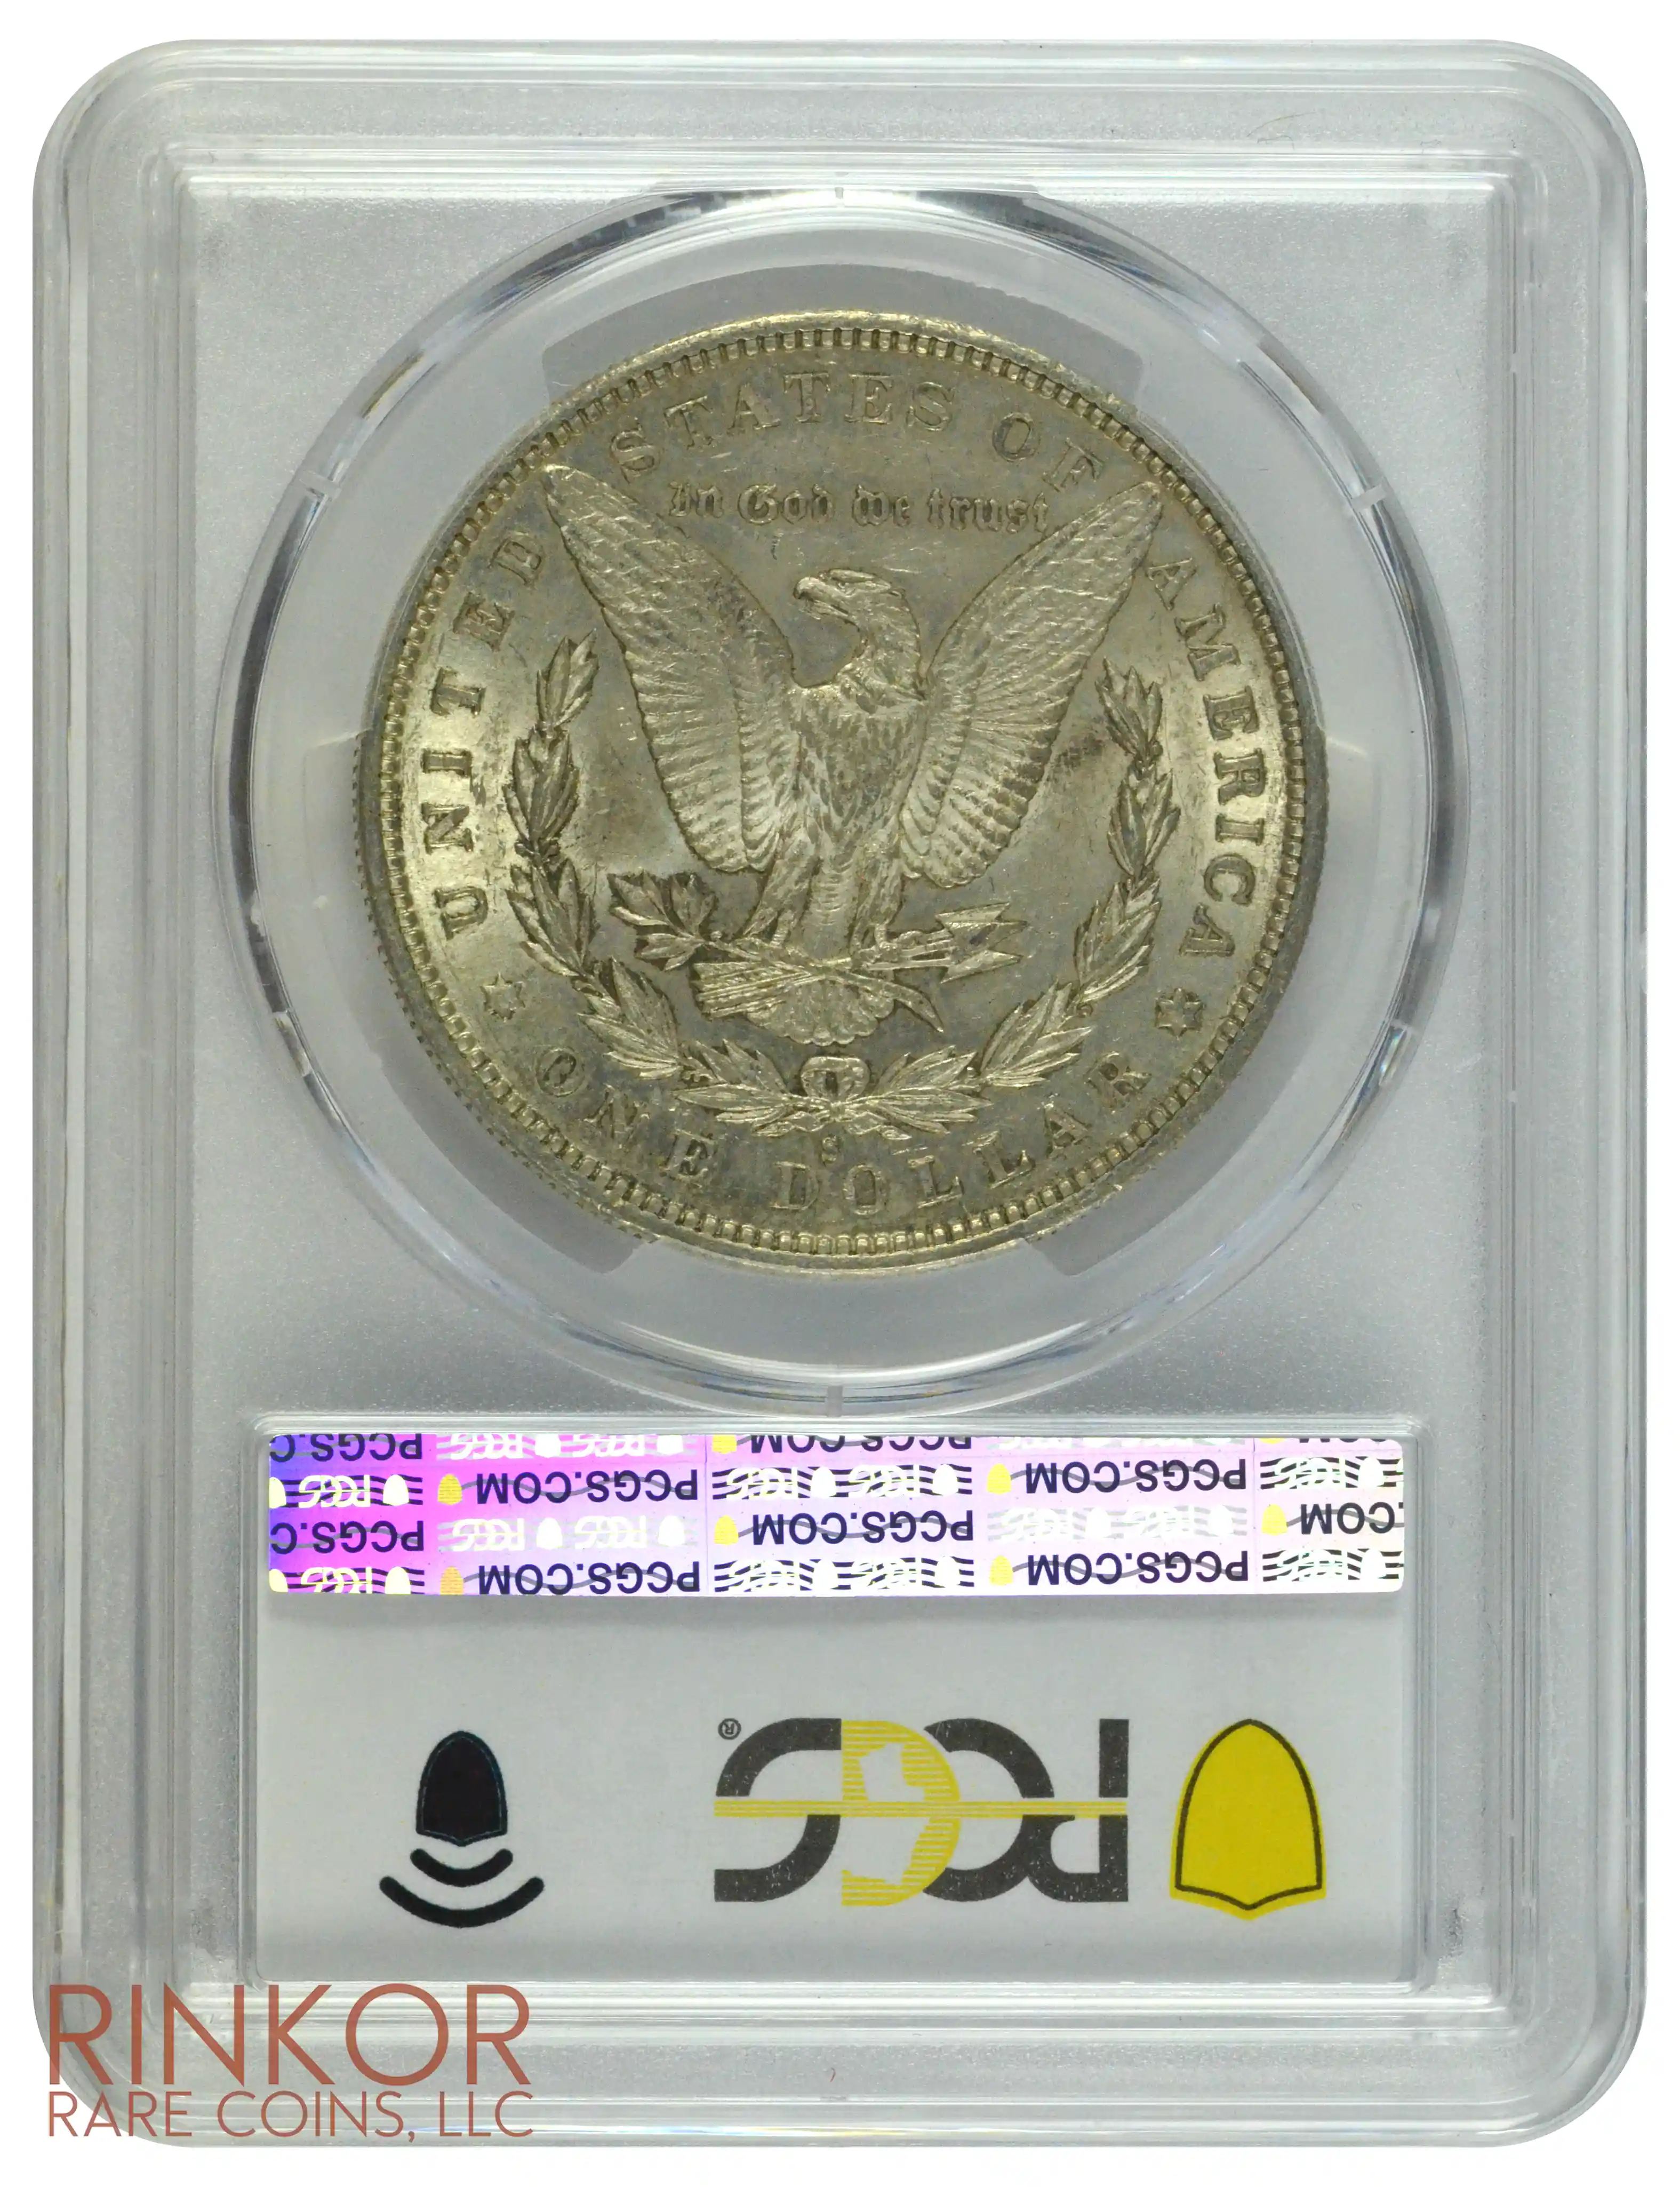 1887-S $1 PCGS AU-58